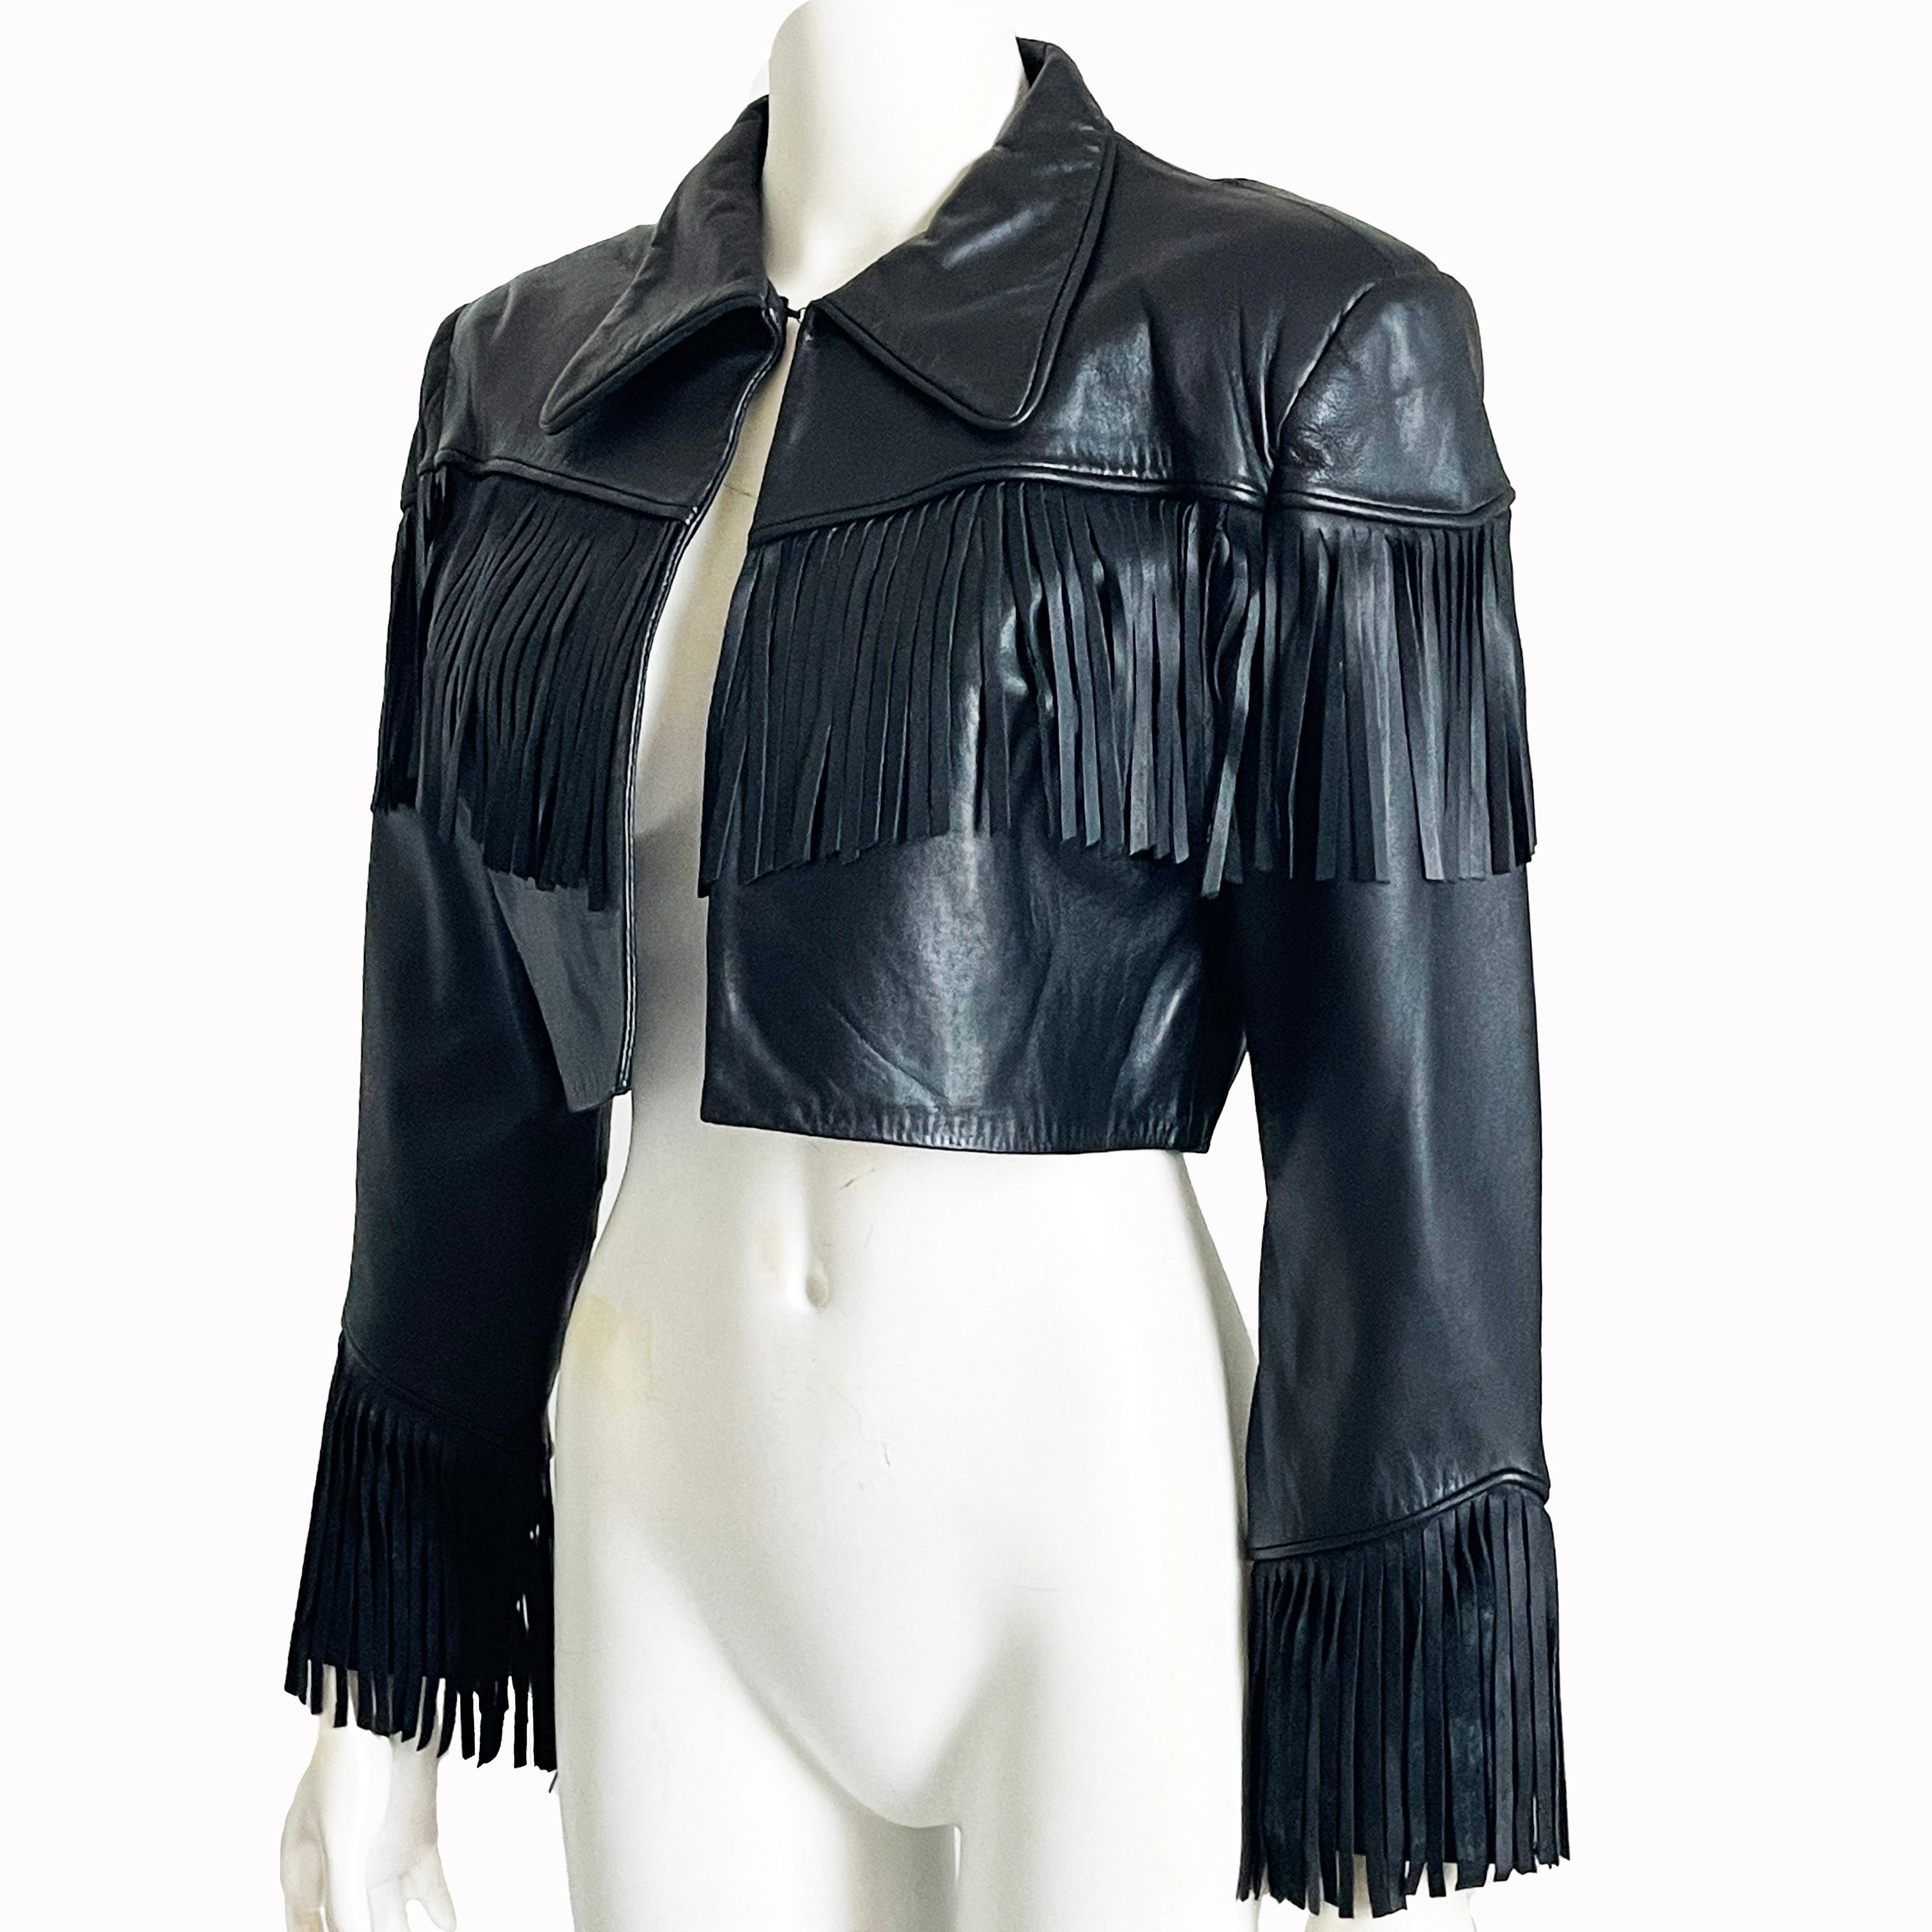 Norma Kamali Leather Jacket Black Cropped Fringe Vintage 1990s Rare Rocker Chic For Sale 1